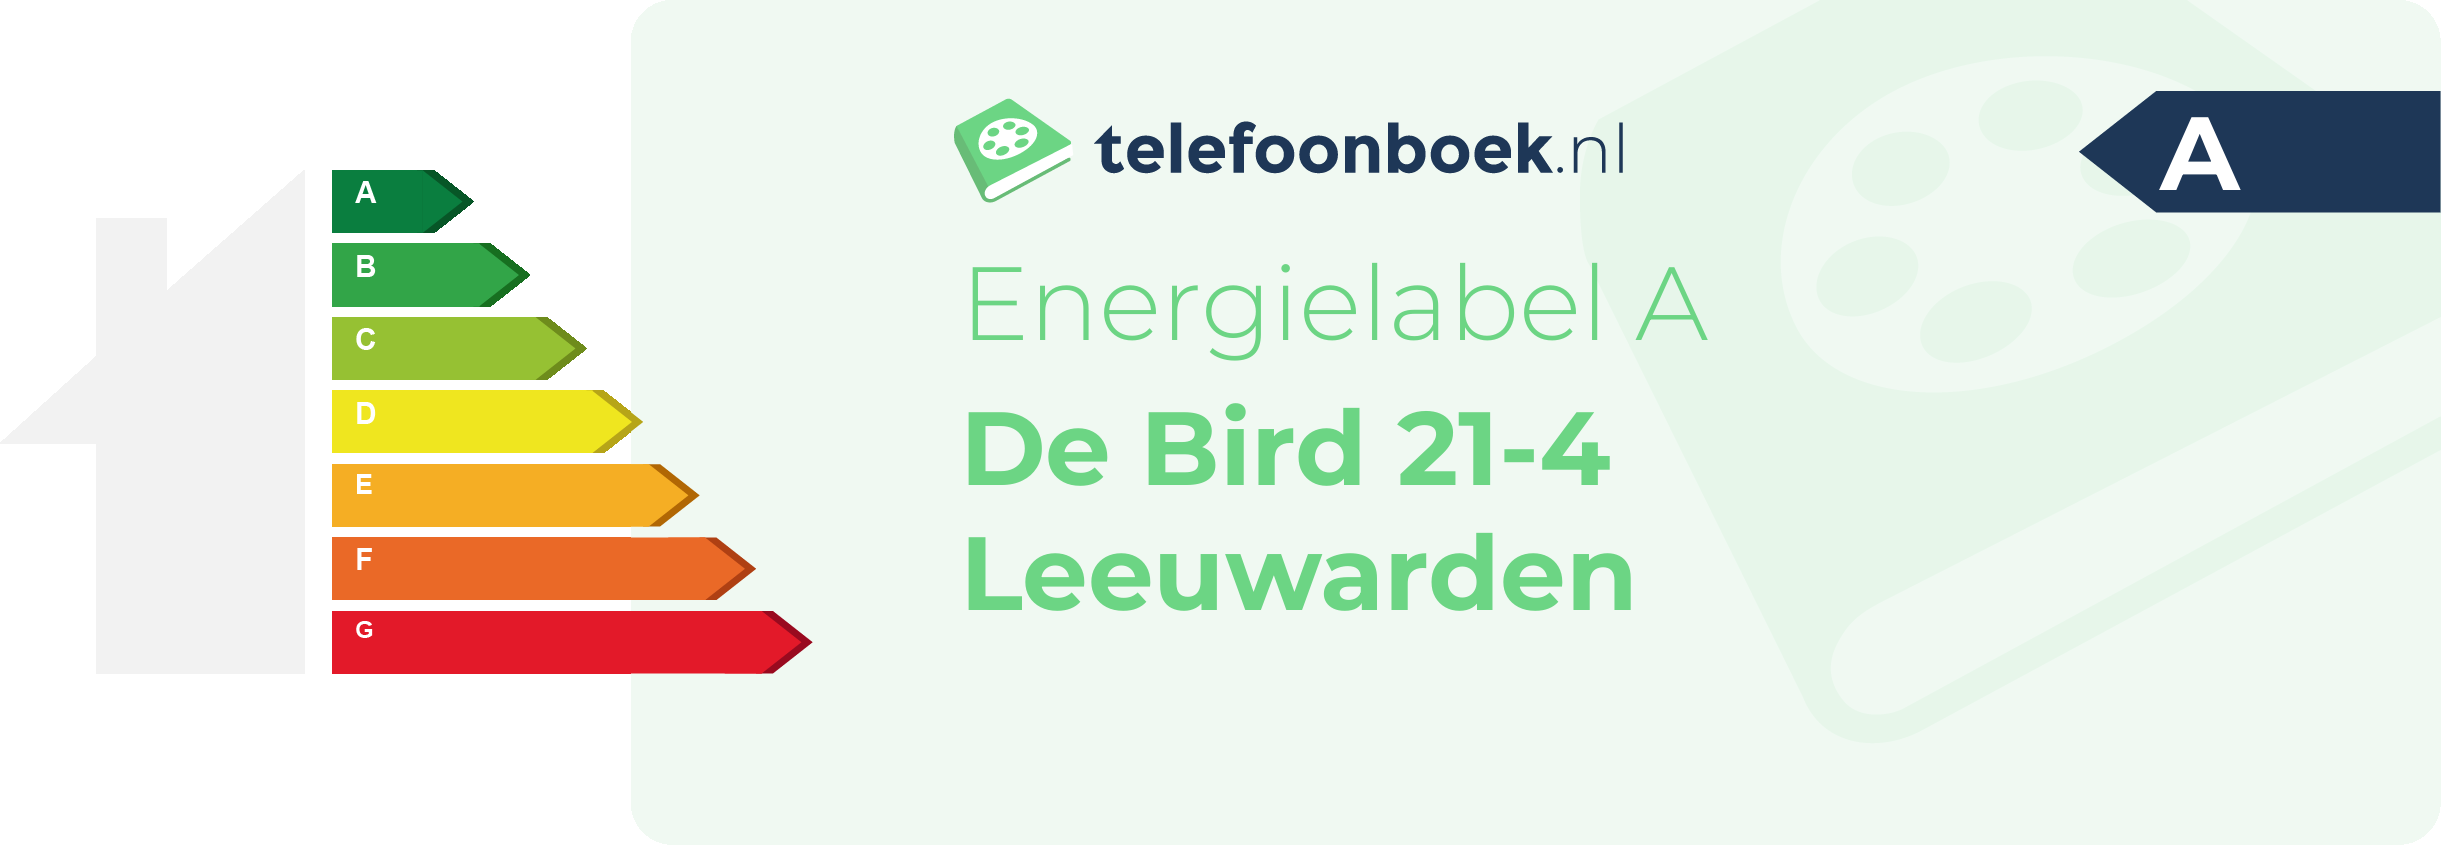 Energielabel De Bird 21-4 Leeuwarden